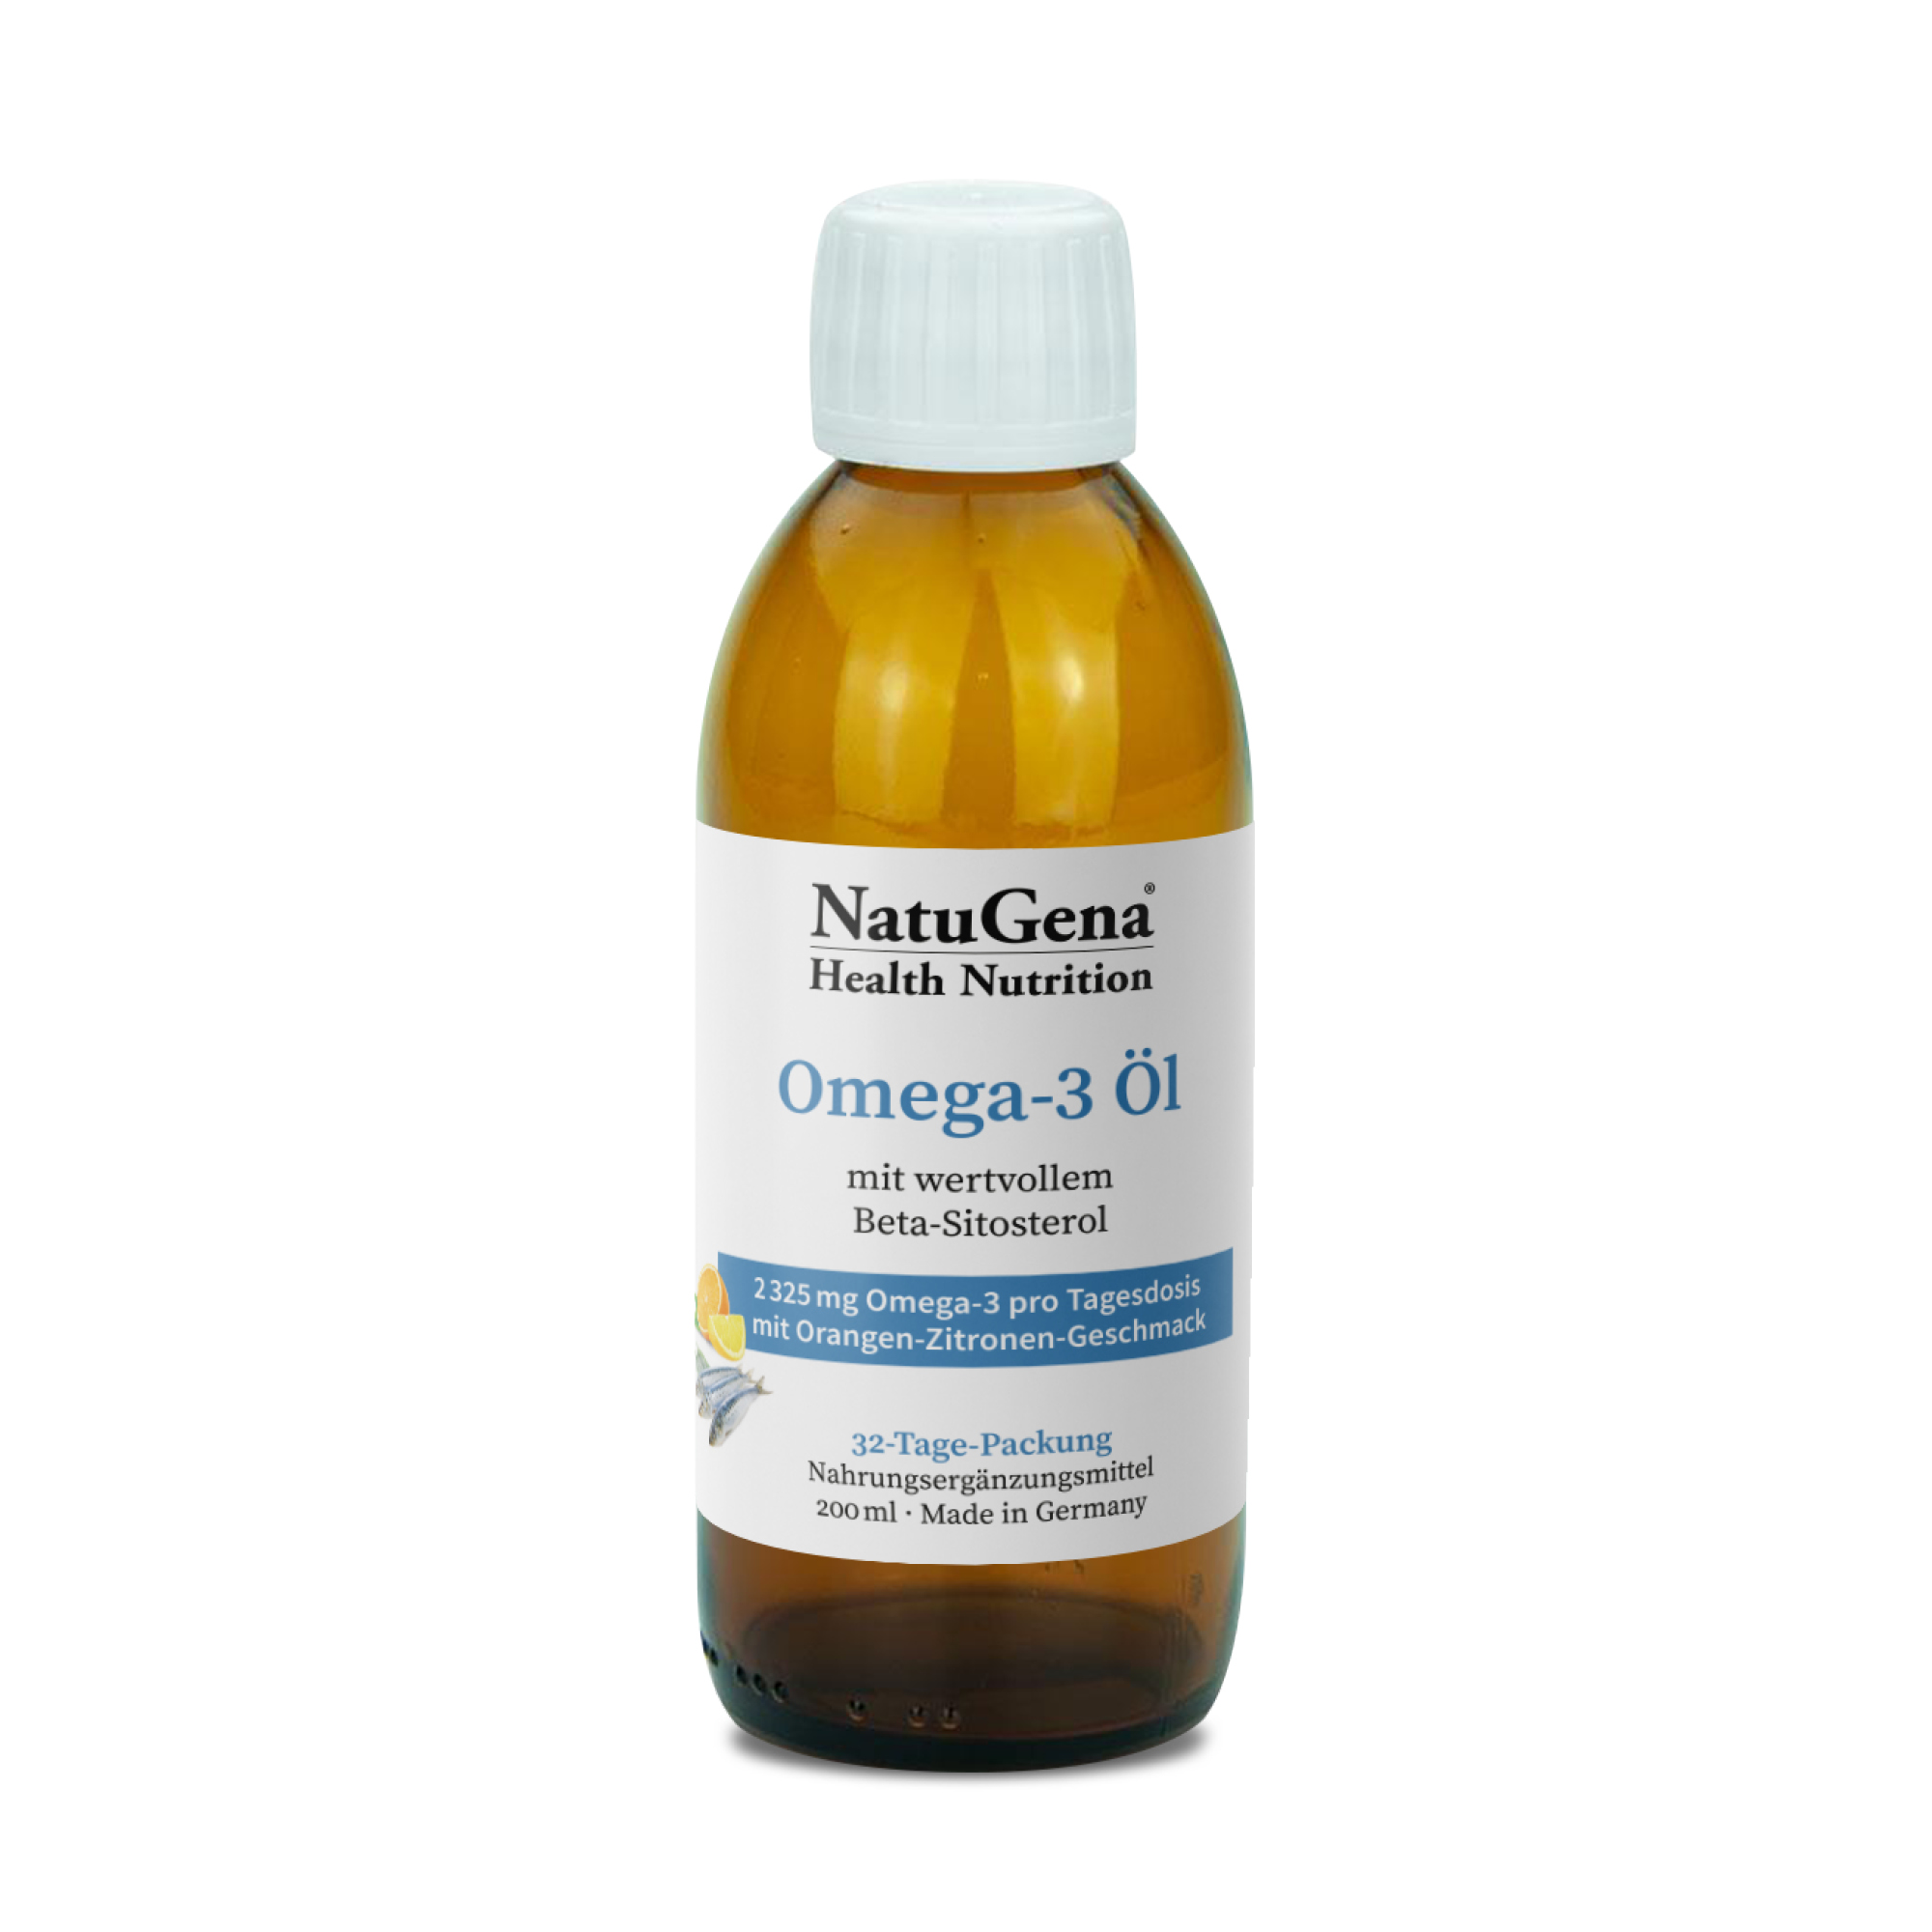 NatuGena Omega-3 Öl | 200ml | Rein & Nachhaltig | Unterstützt Herz, Gehirn, Sehkraft | mit EPA & DHA